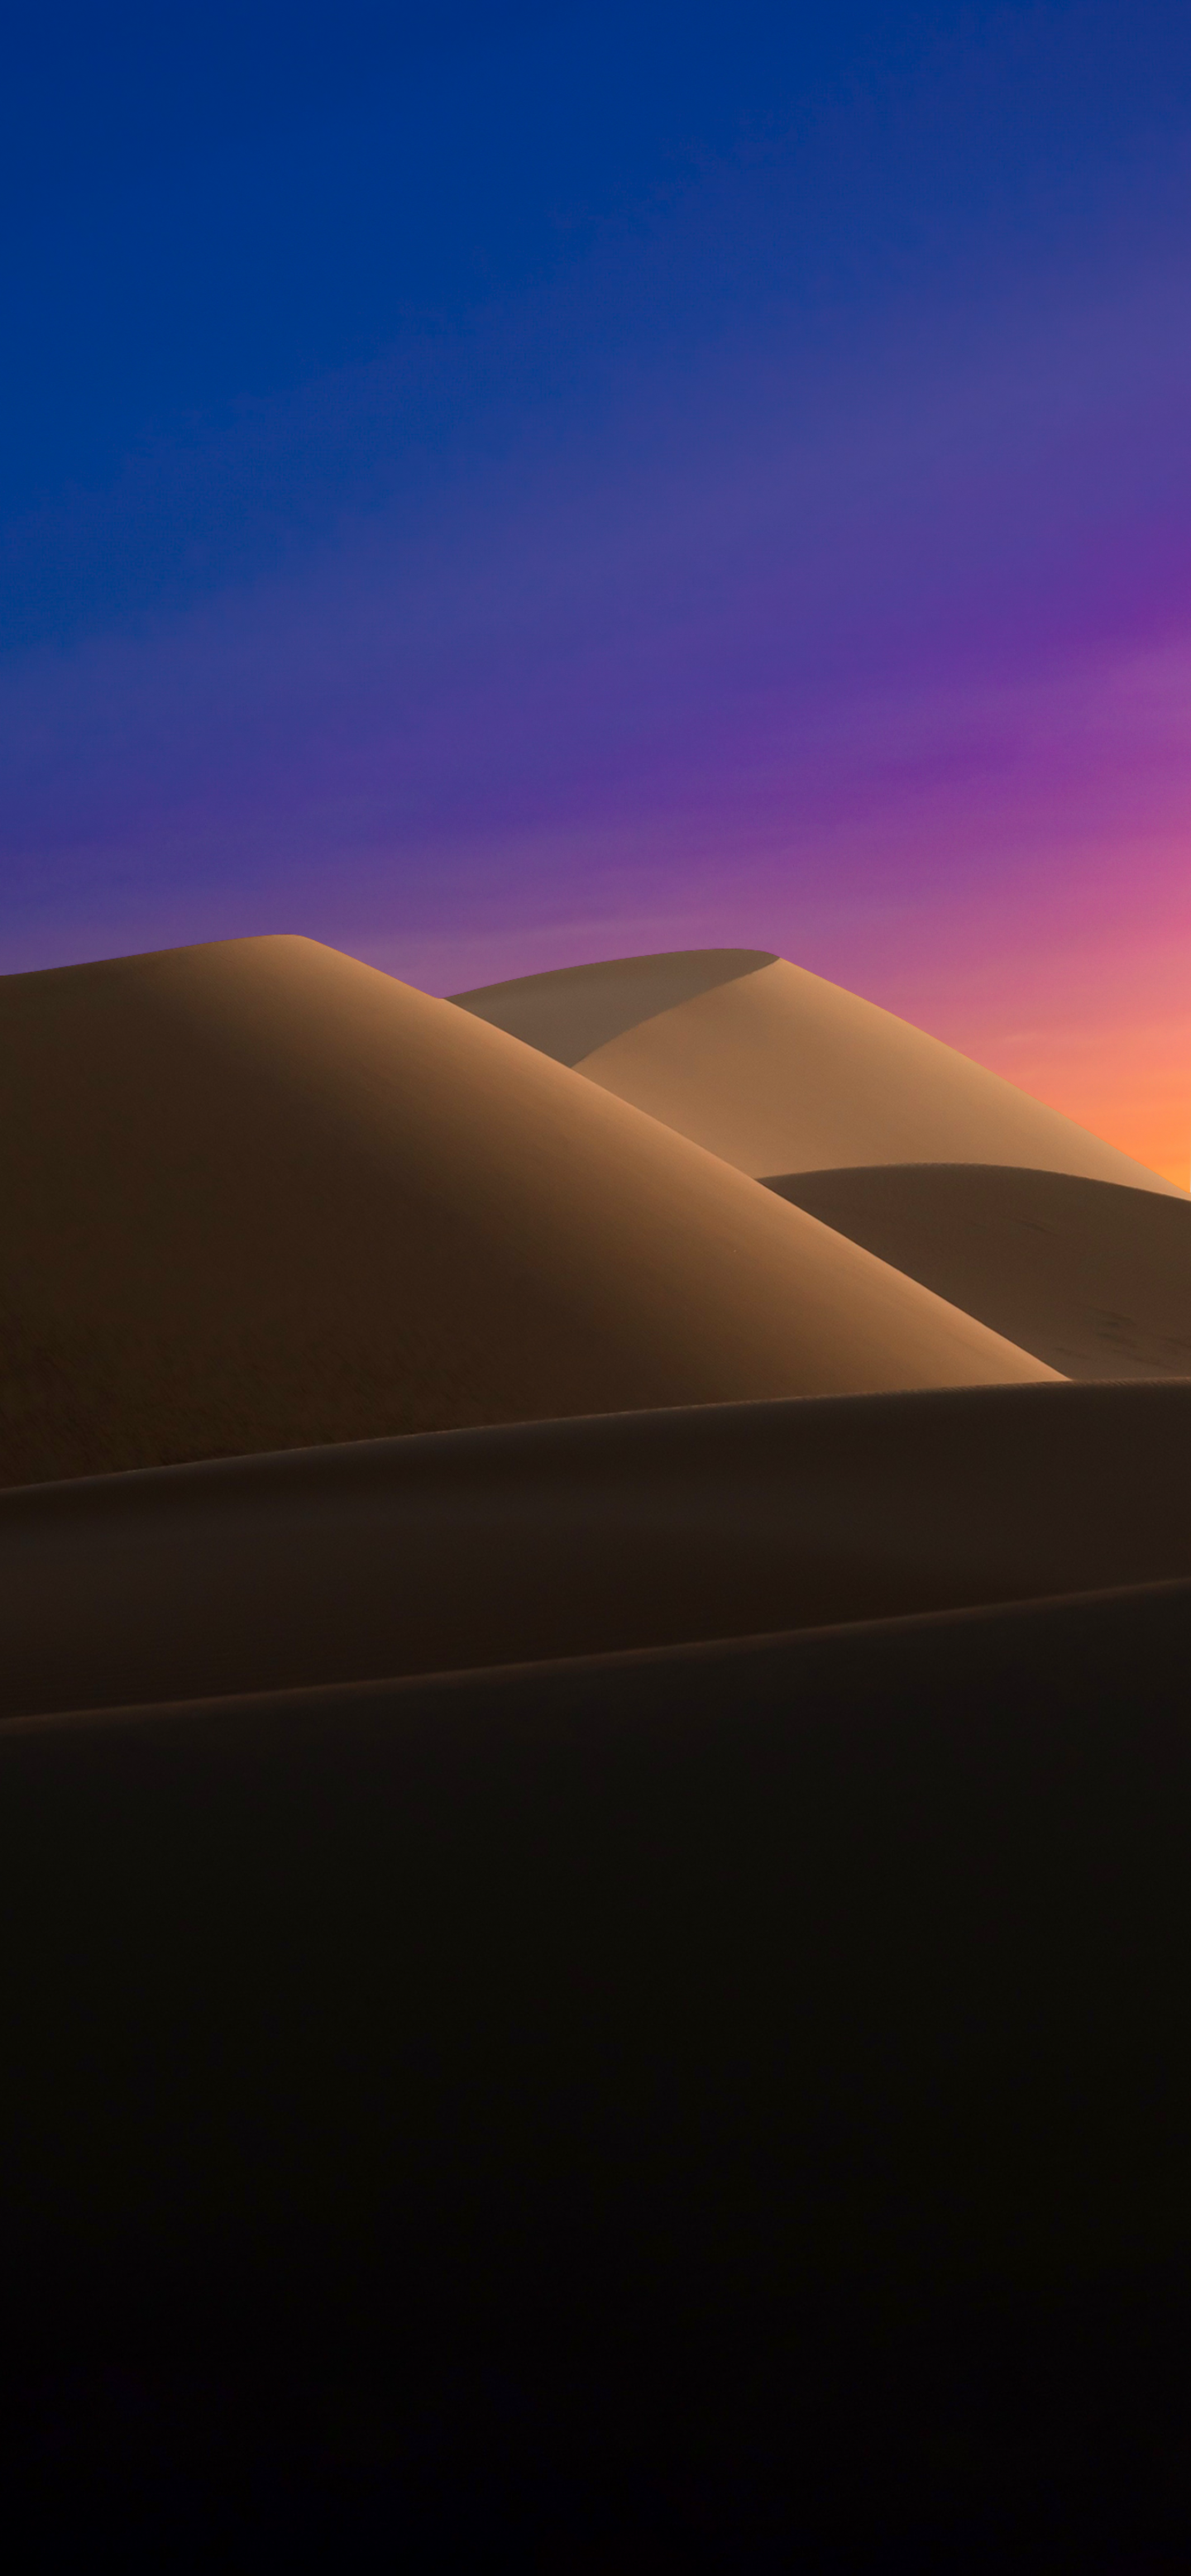 Fondos de pantalla de dunas en ocaso